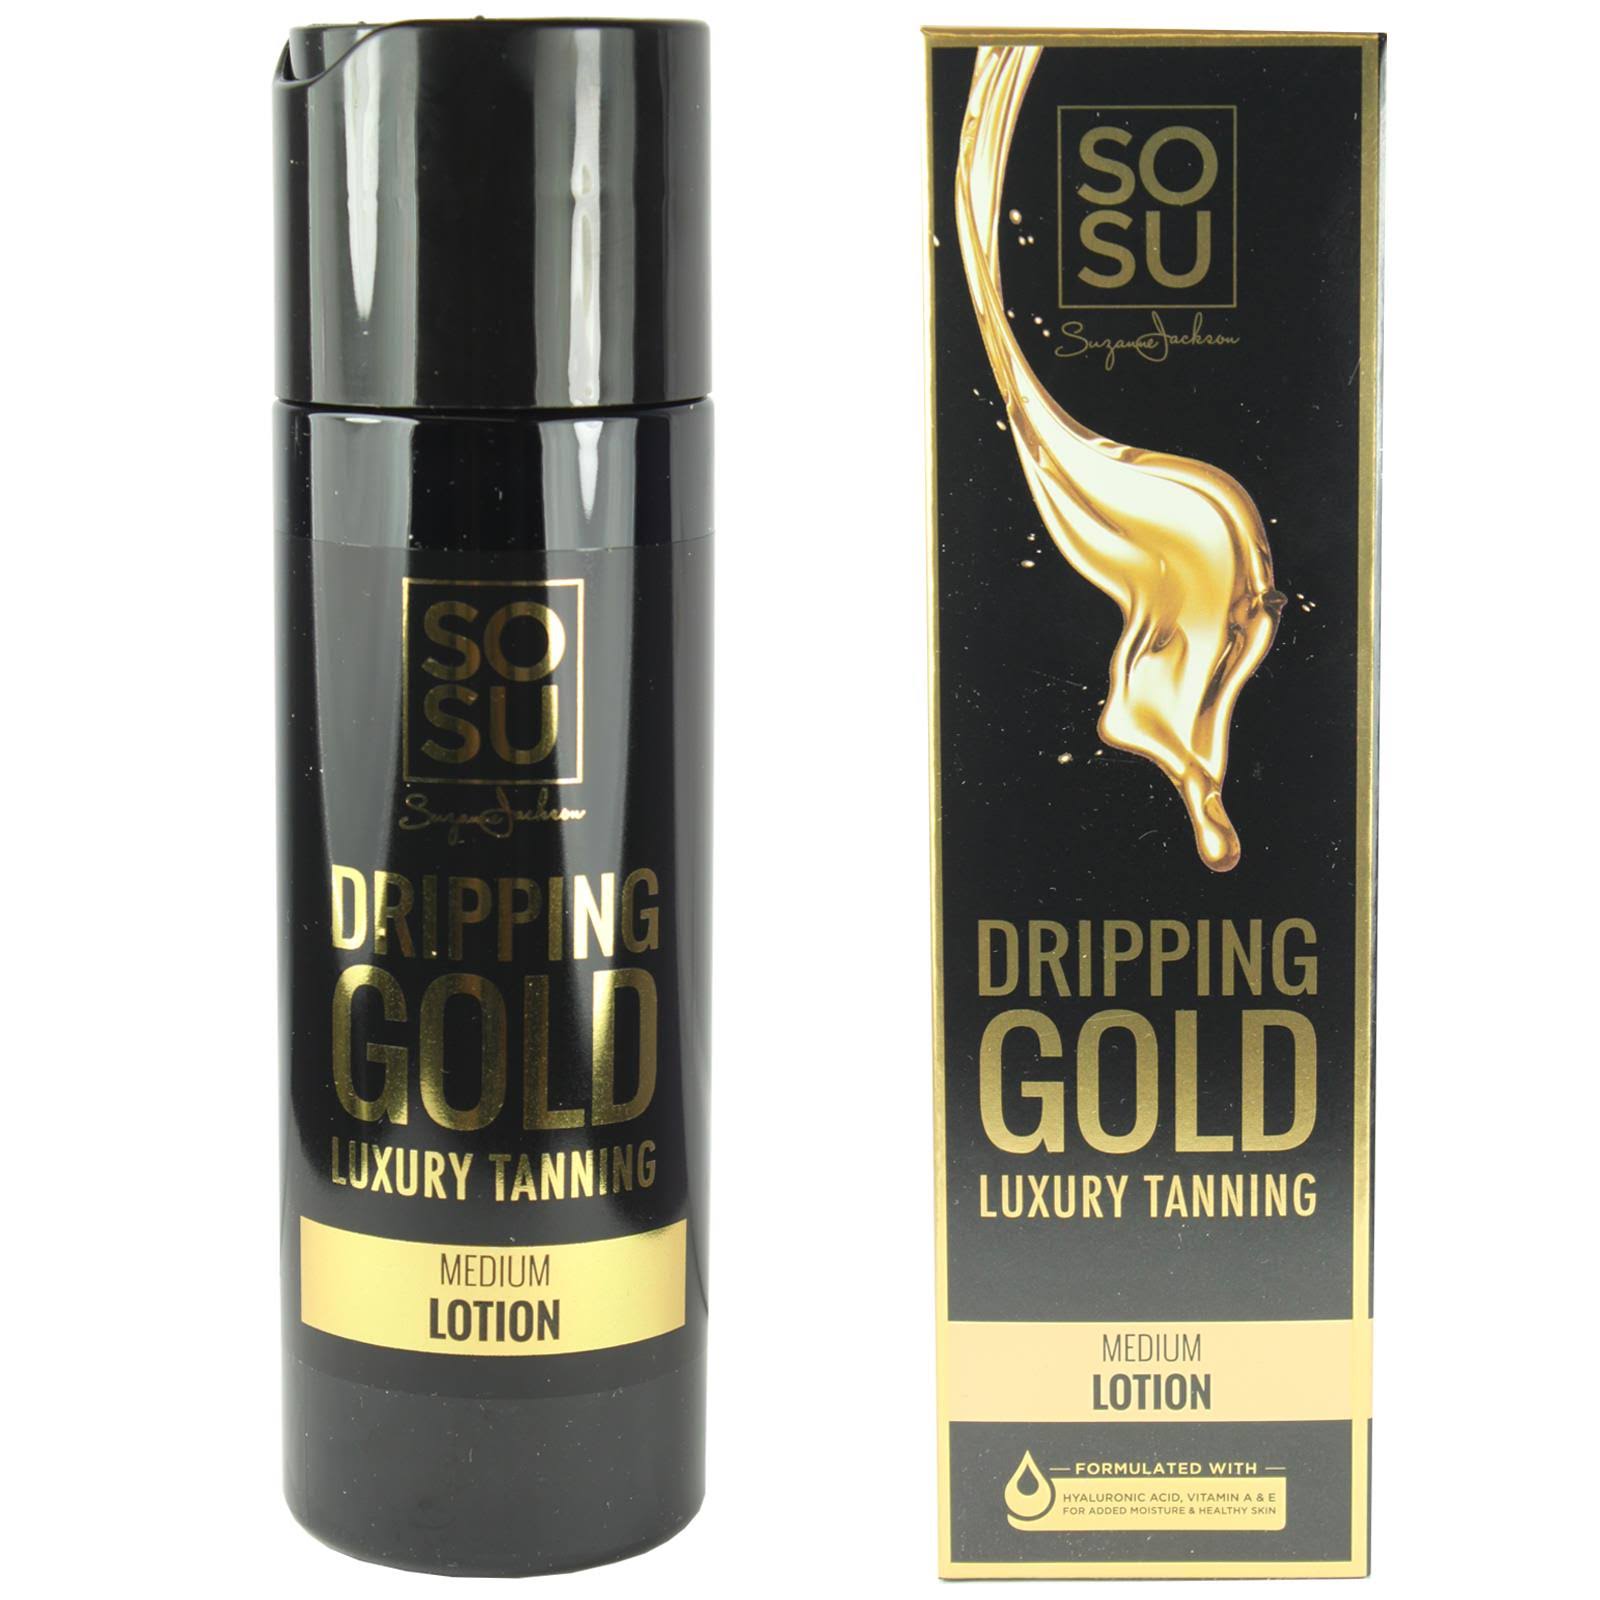 SOSU Dripping Gold Luxury Tanning Lotion Medium